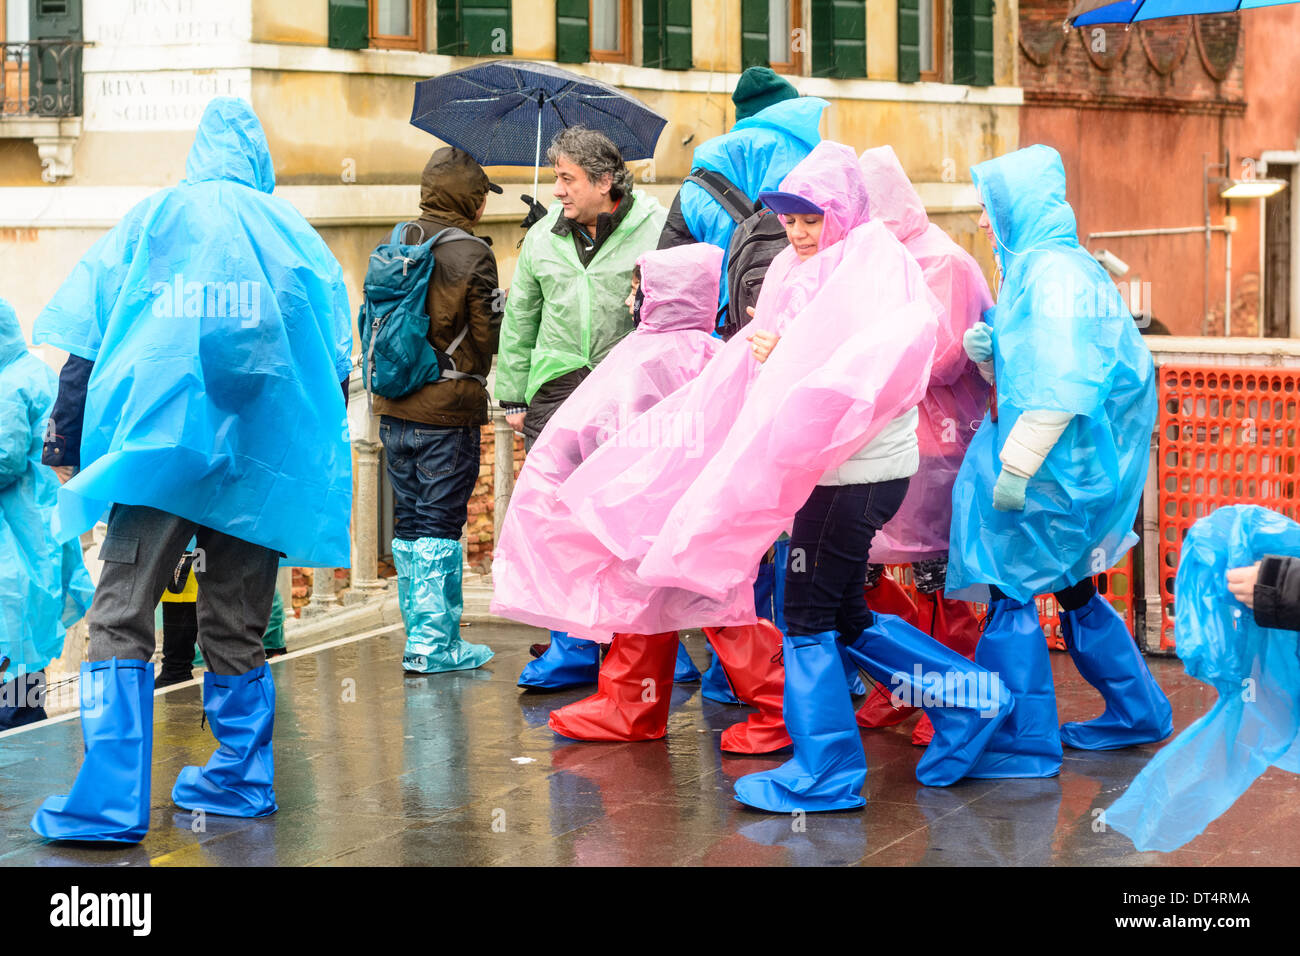 Venedig, Italien. Menschen in nassem Wetter Kleidung, Regenponchos und Gummistiefel, auf Brücke im Regen stehen. Stockfoto